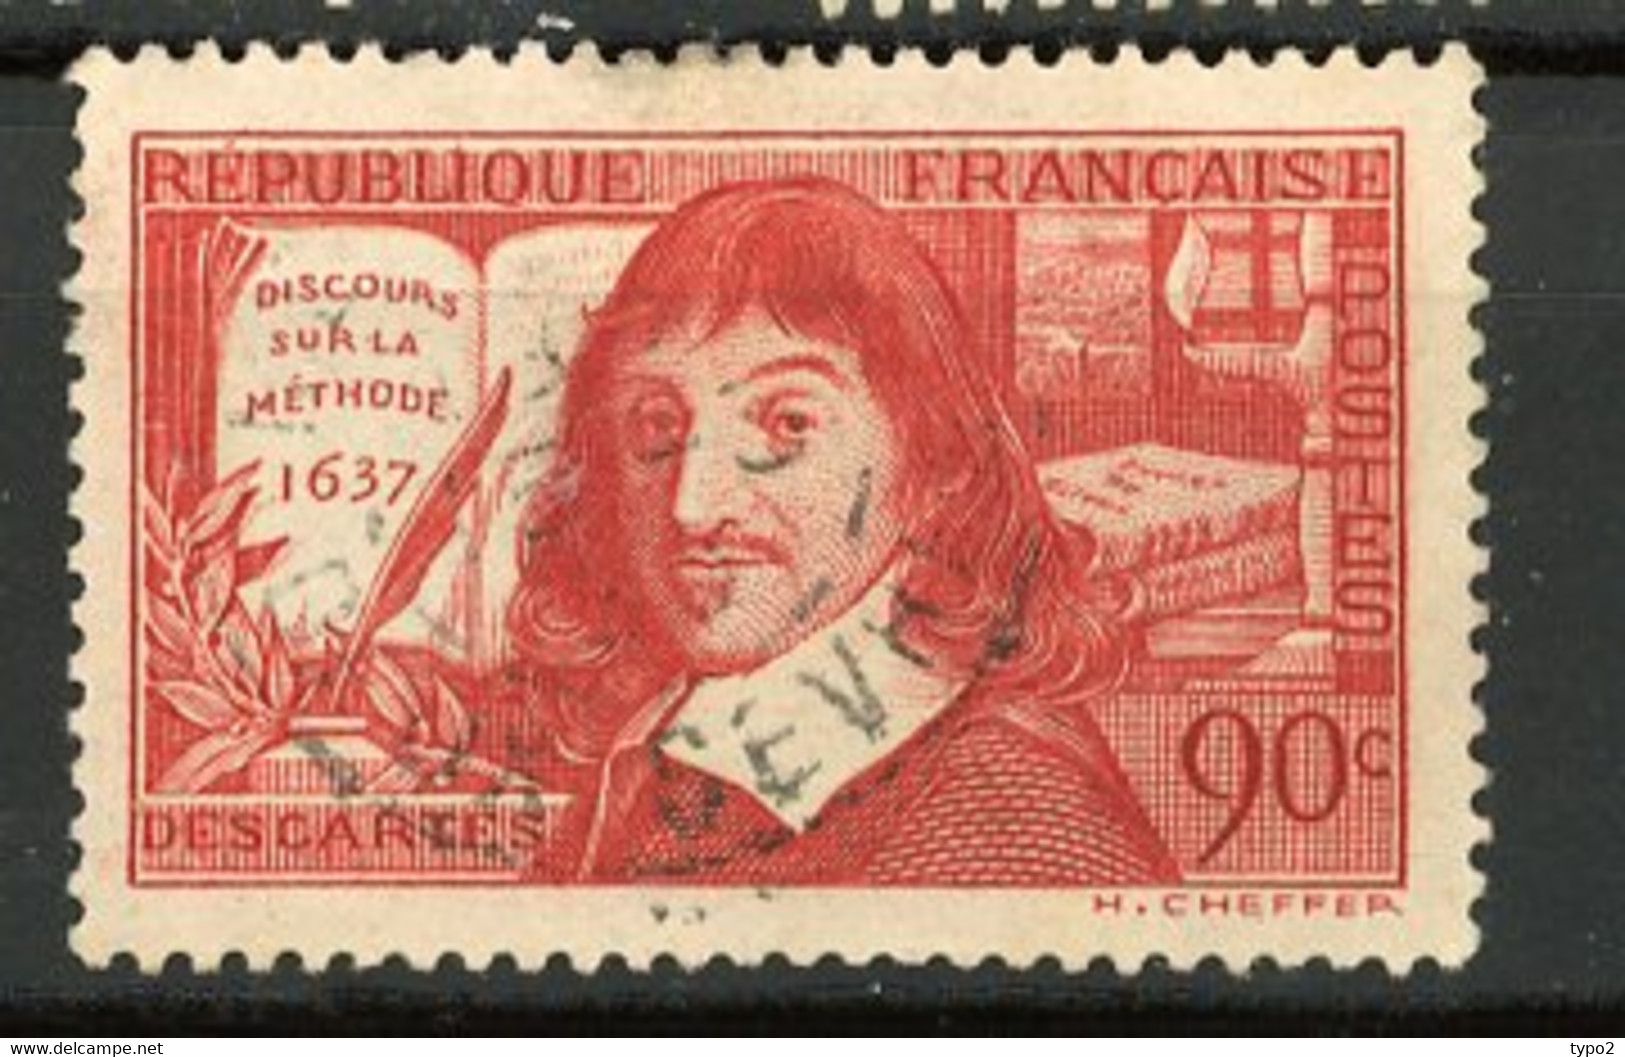 FR - Yv. N° 341,  (o)  Descartes: SUR LA METHODE  Cote  1,5  Euro BE   2 Scans - Used Stamps